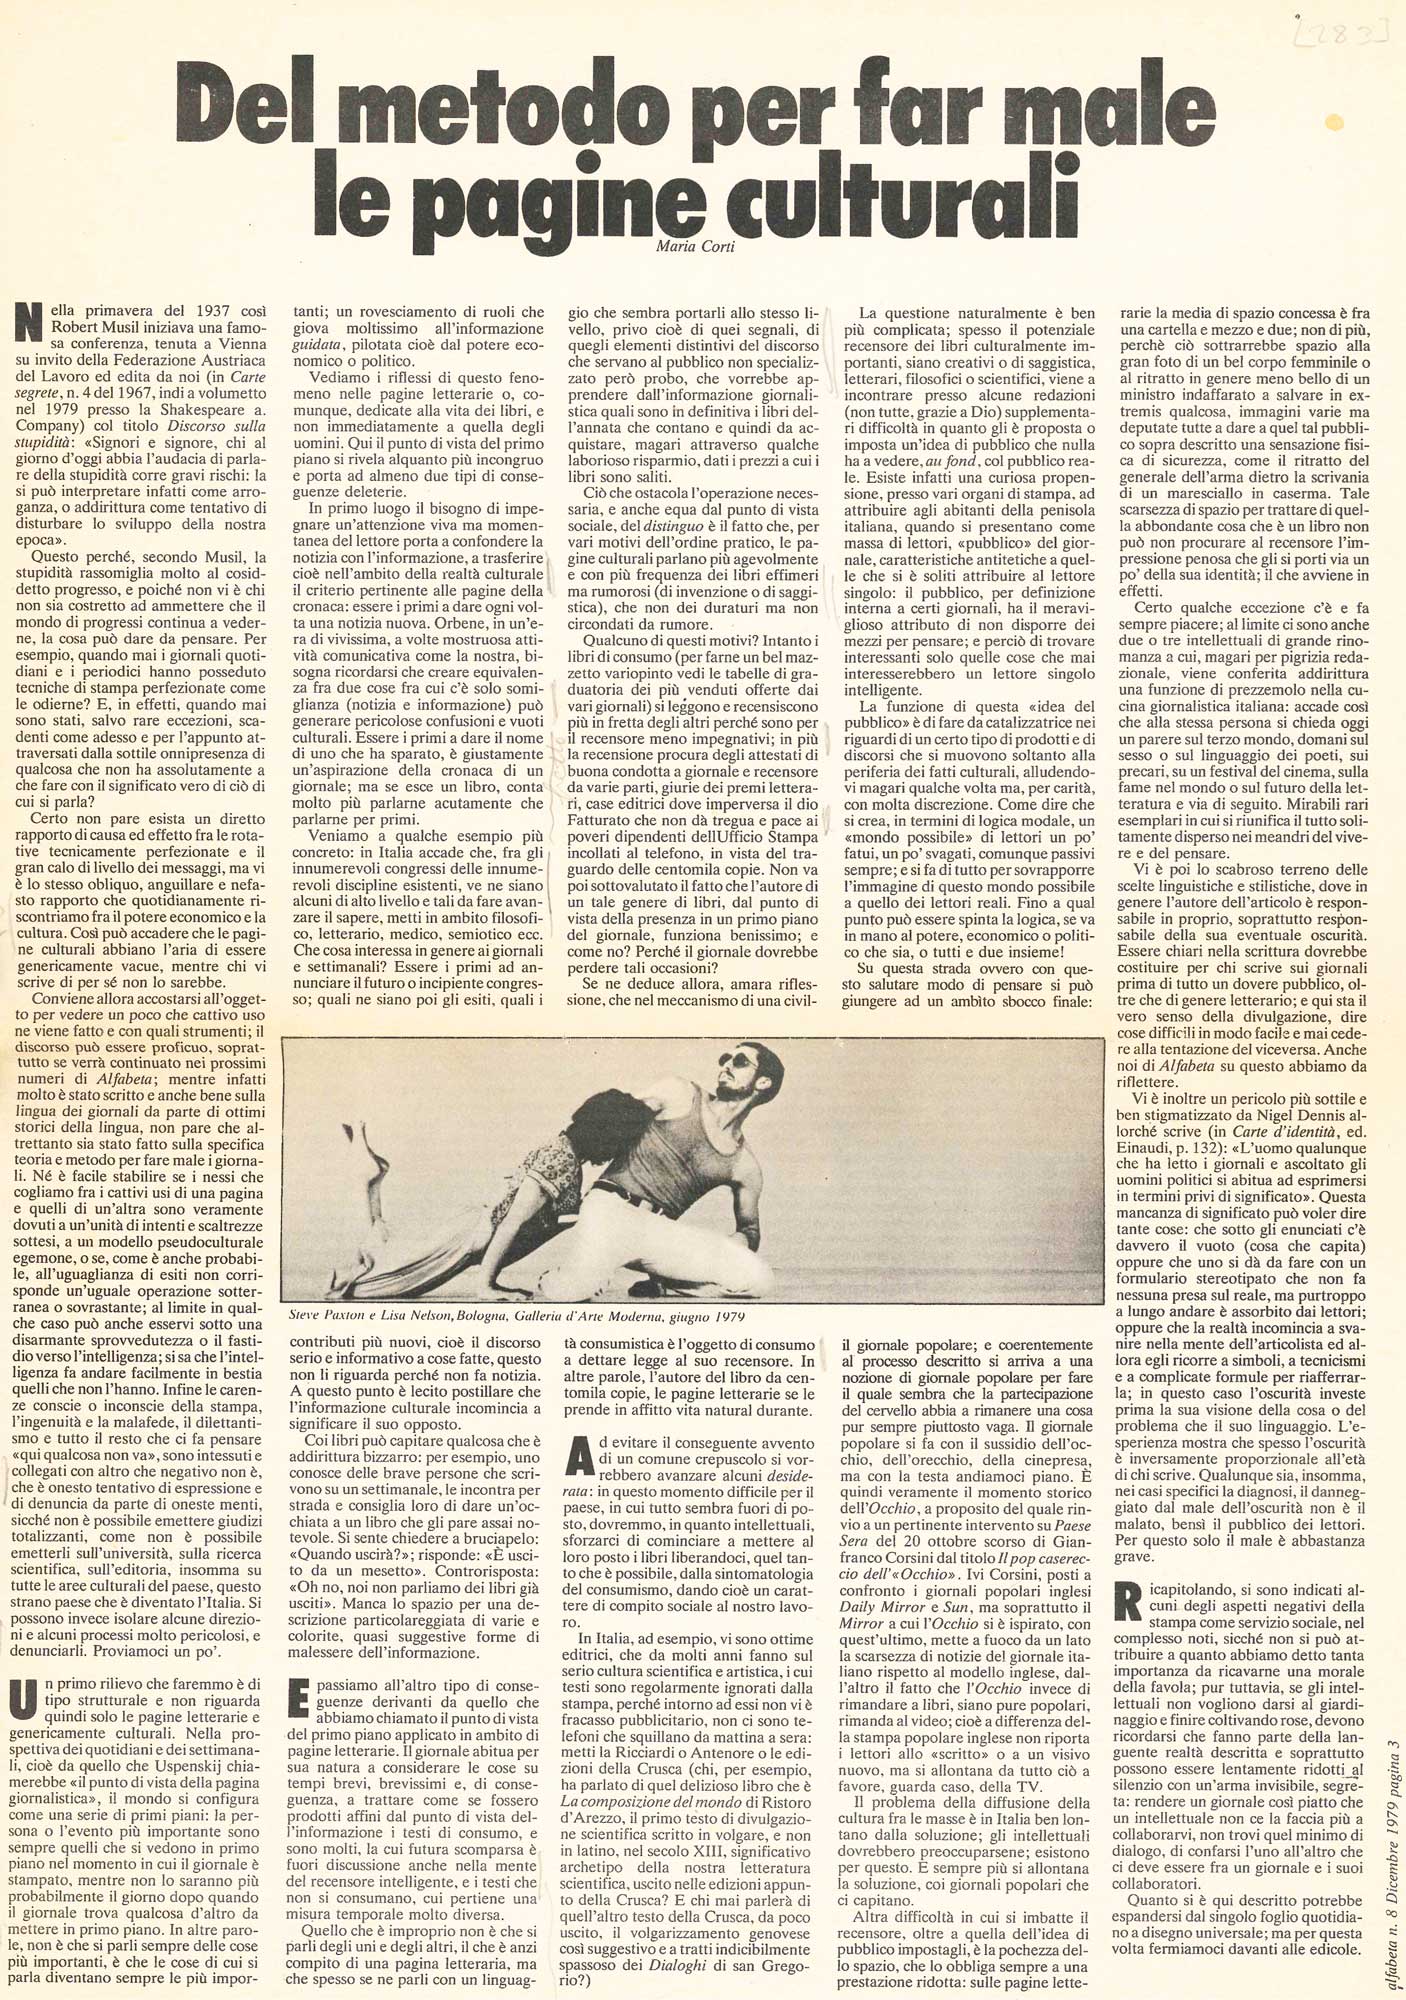 Del metodo per far male le pagine culturali, «Alfabeta», n. 8, dicembre 1979